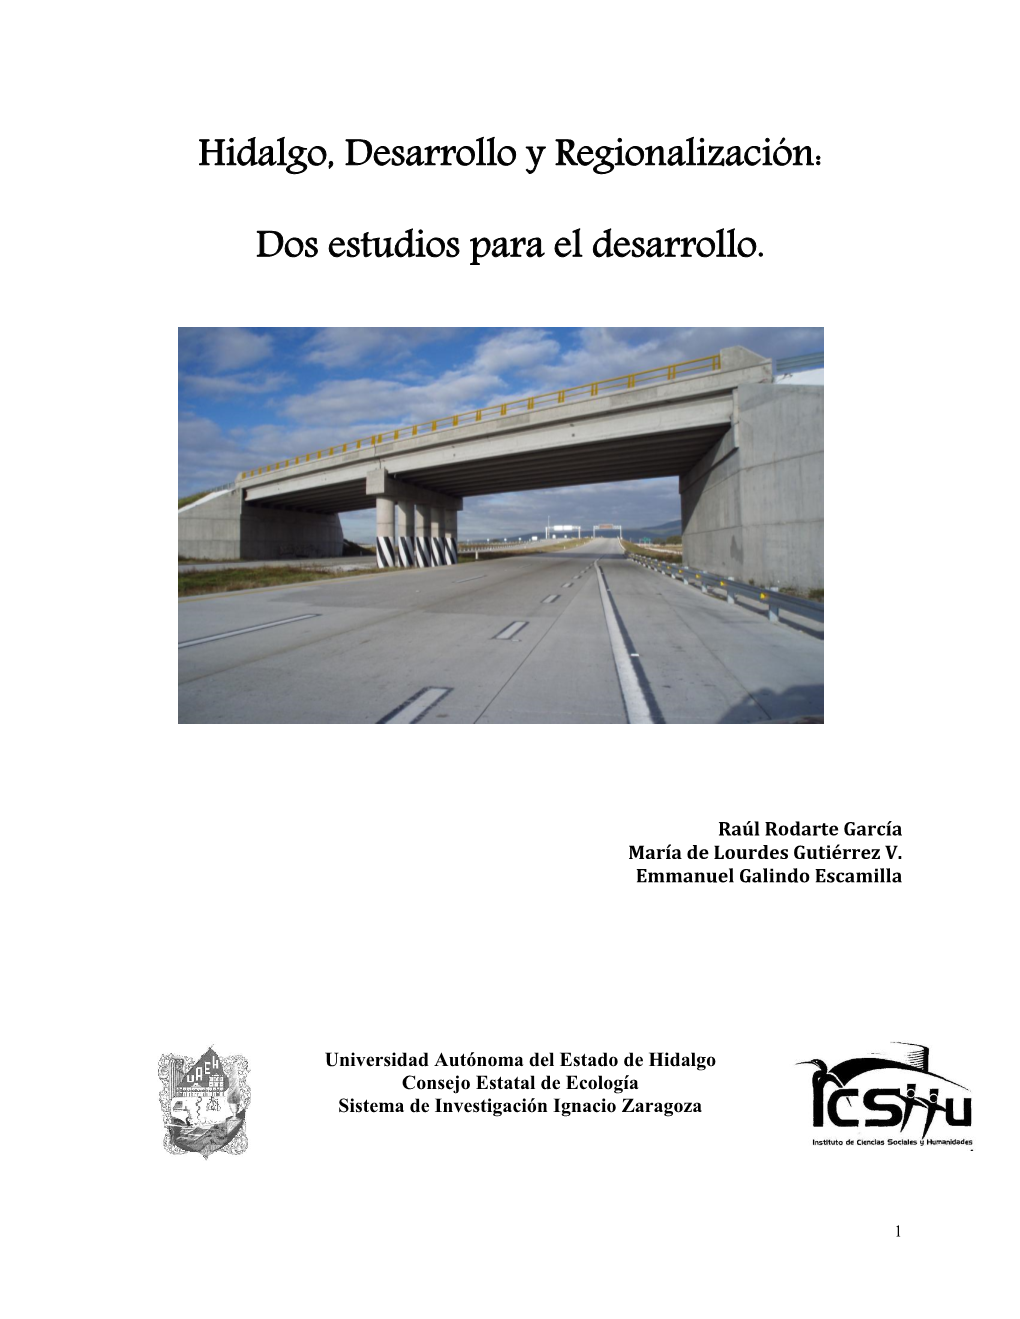 Hidalgo, Desarrollo Y Regionalización: Dos Estudios Para El Desarrollo